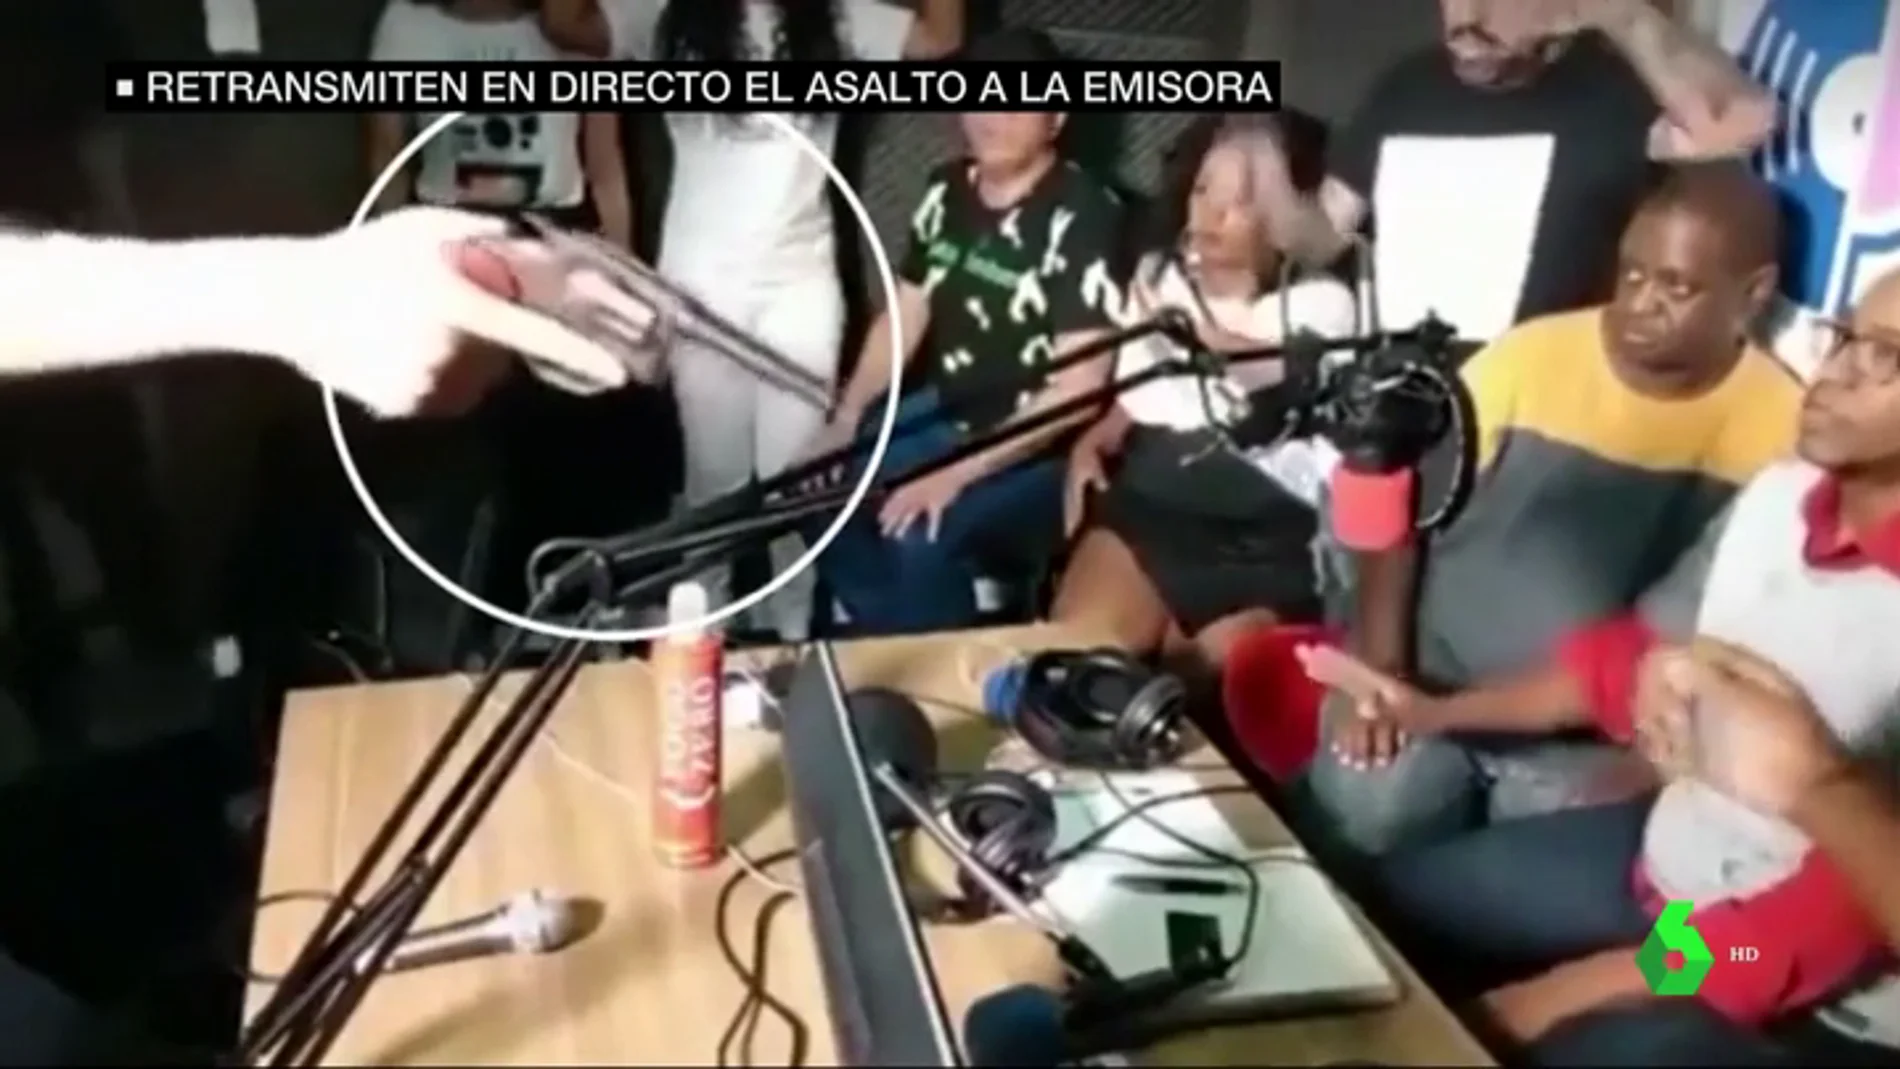 Atracan una emisora de radio en pleno directo en Brasil y los espectadores alertan a la Policía